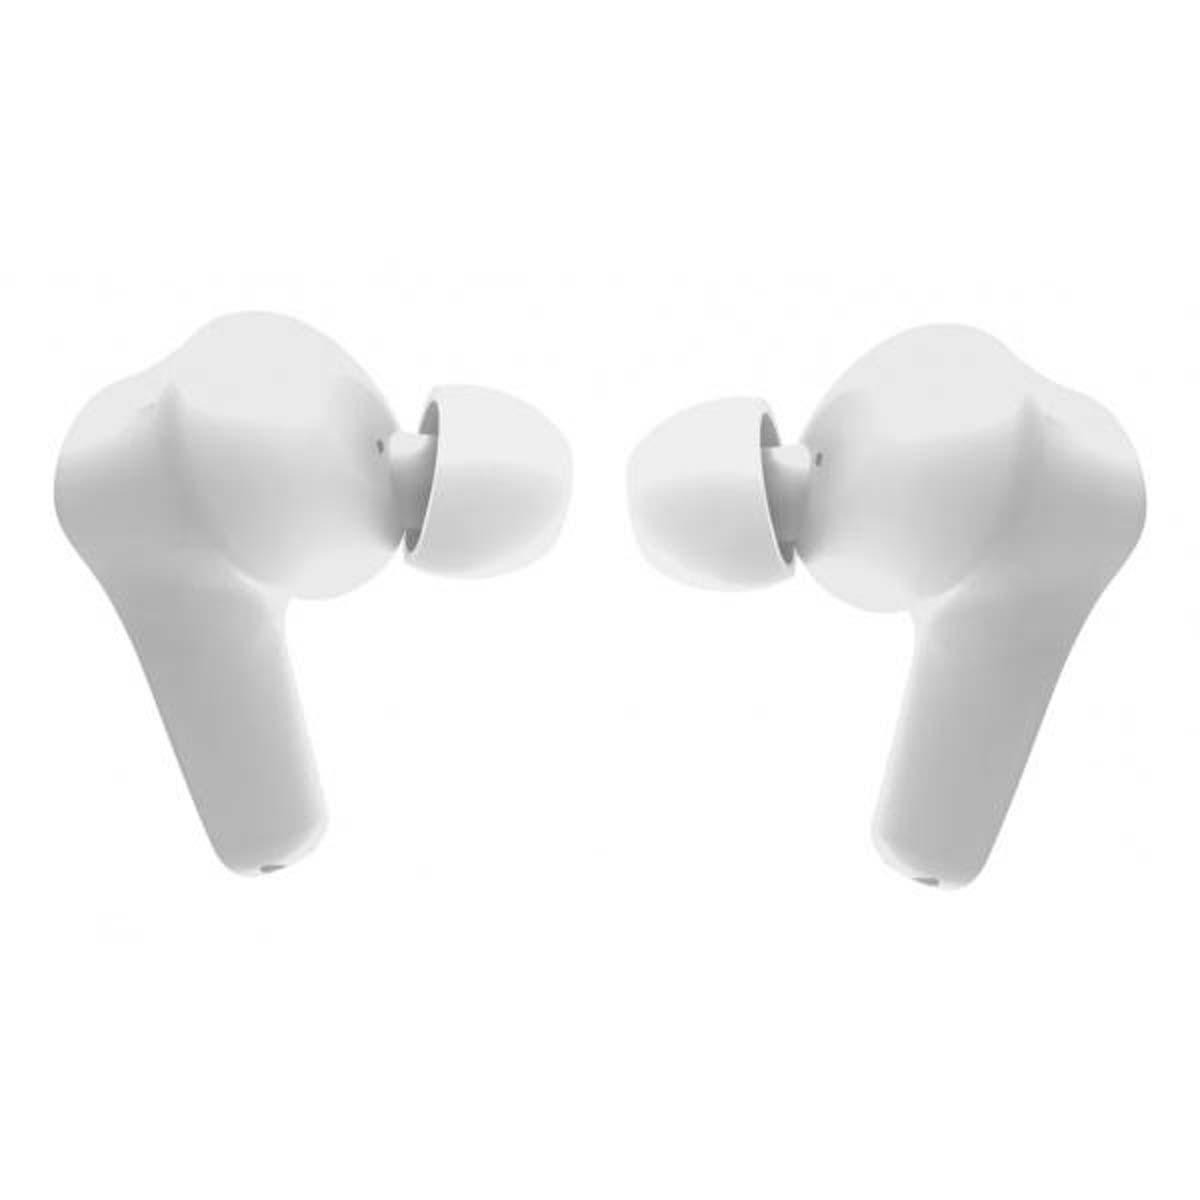 VIVANCO 62599, In-ear In-Ear-Kopfhörer Bluetooth Weiß